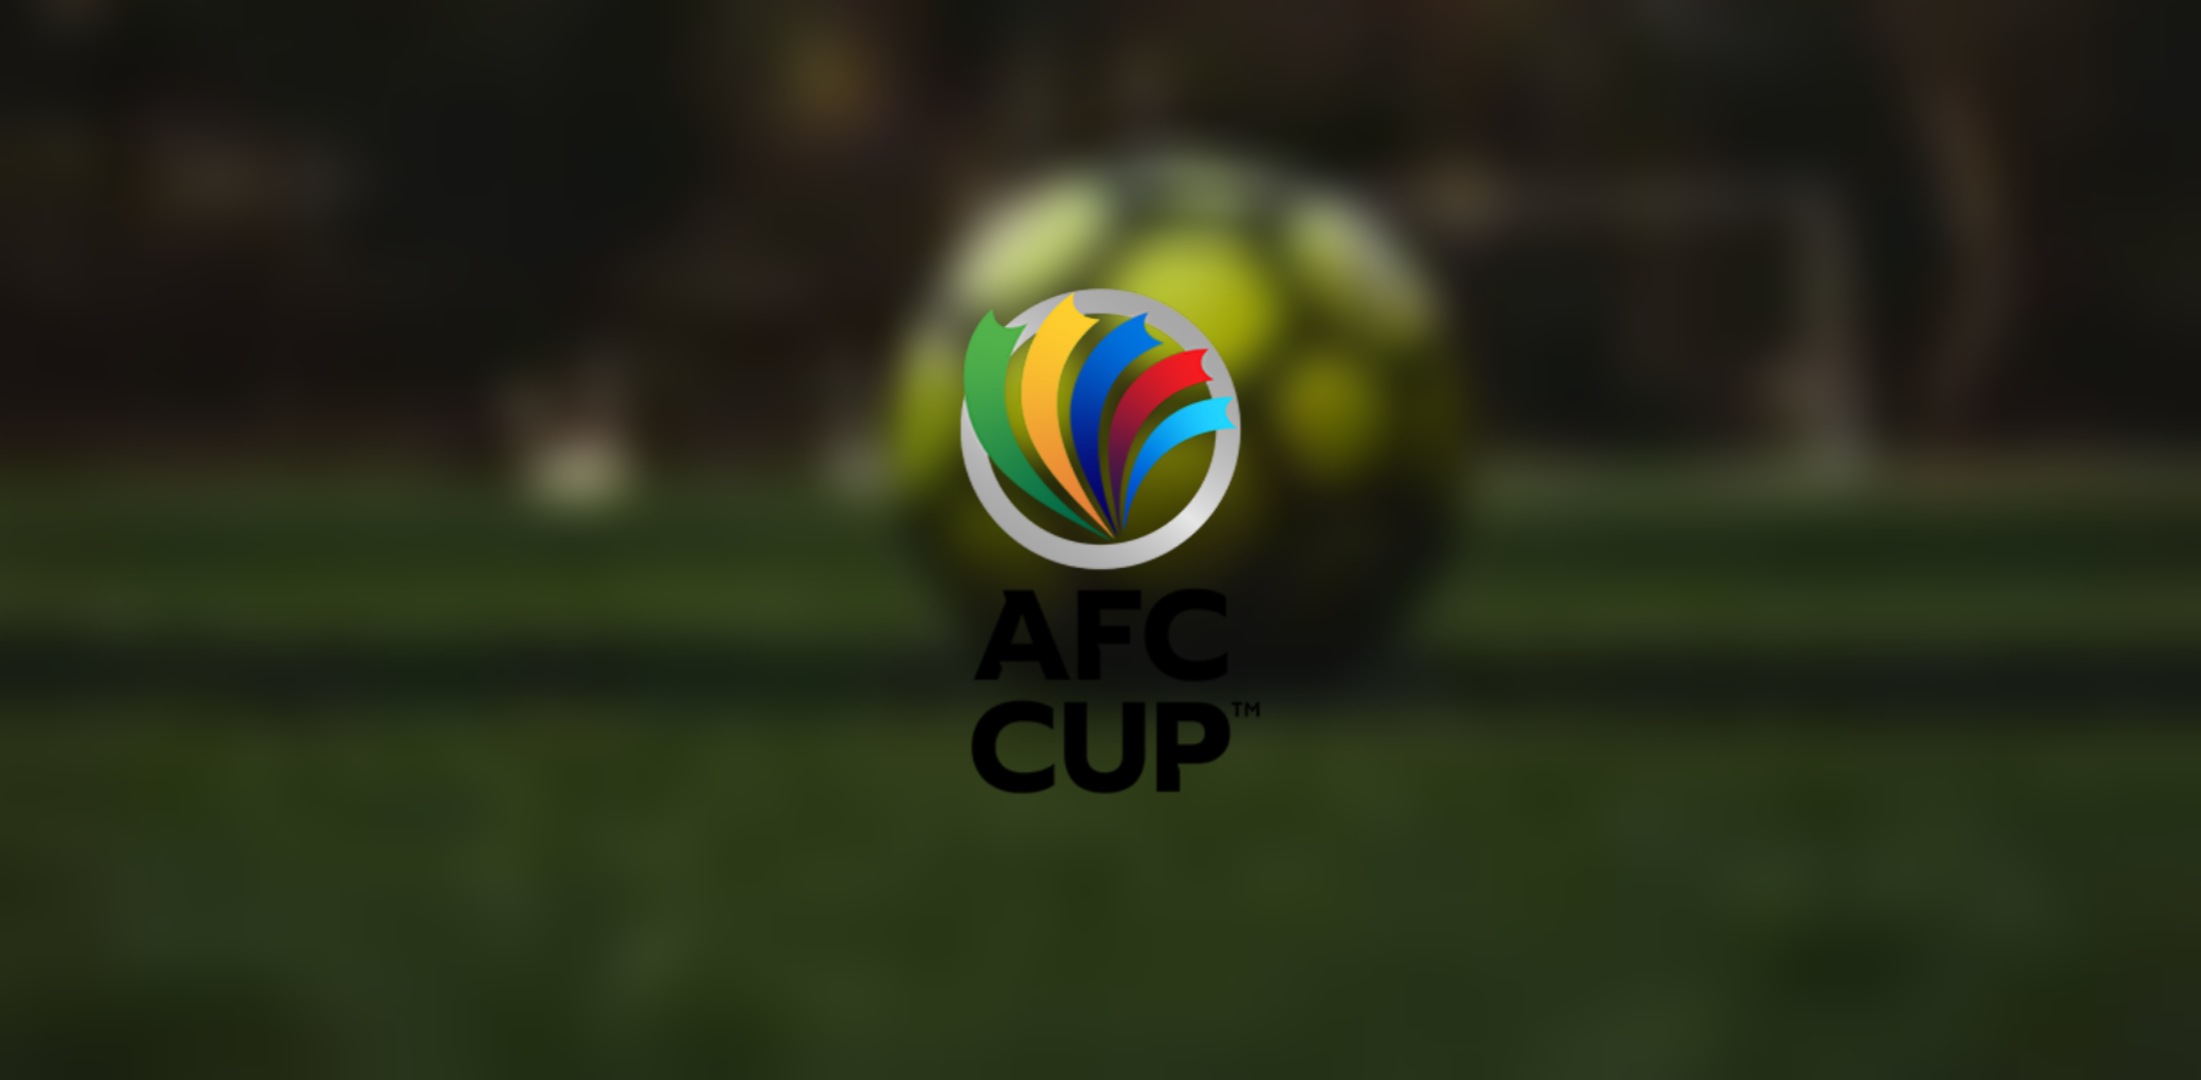 Jadual afc cup 2021